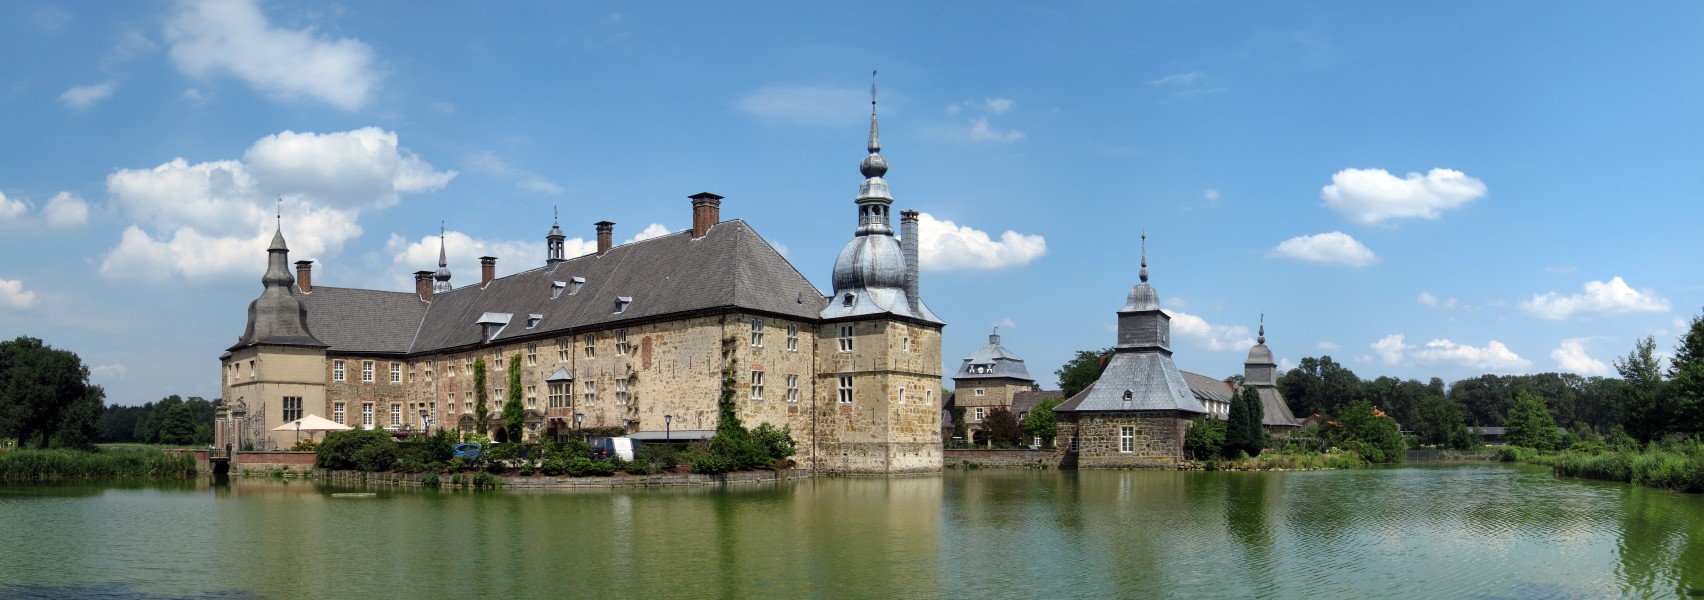 Schloss Lembeck, 3